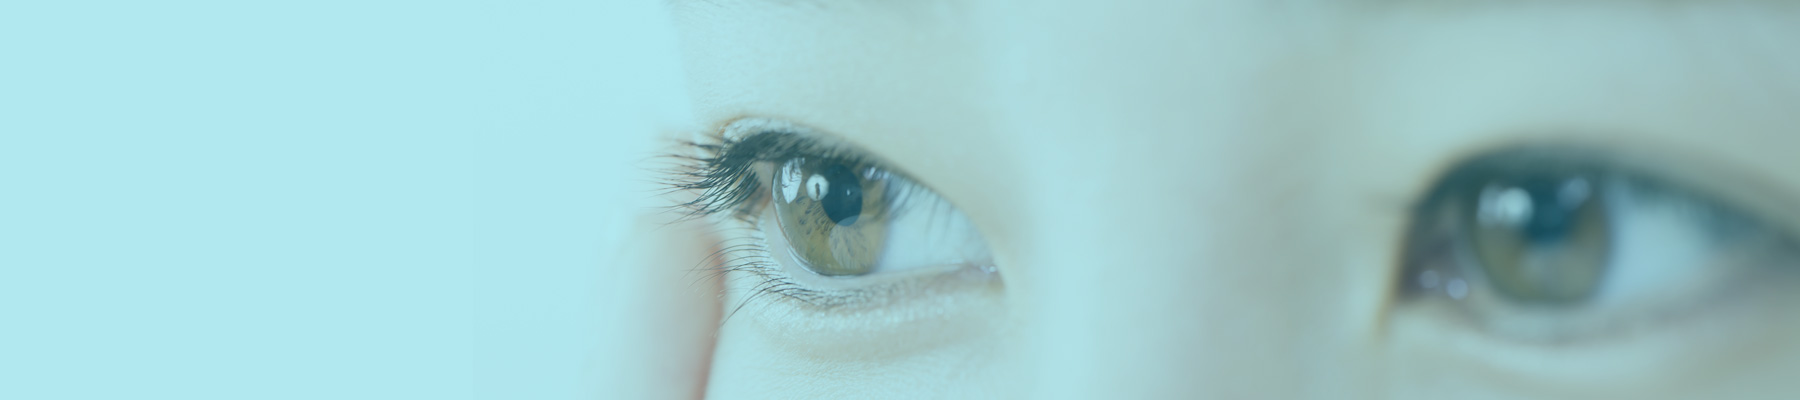 眼瞼下垂・逆さまつげ・まぶたたるみの治療・手術に対応するかつむらアイプラストクリニックのレーザーでの目もと治療